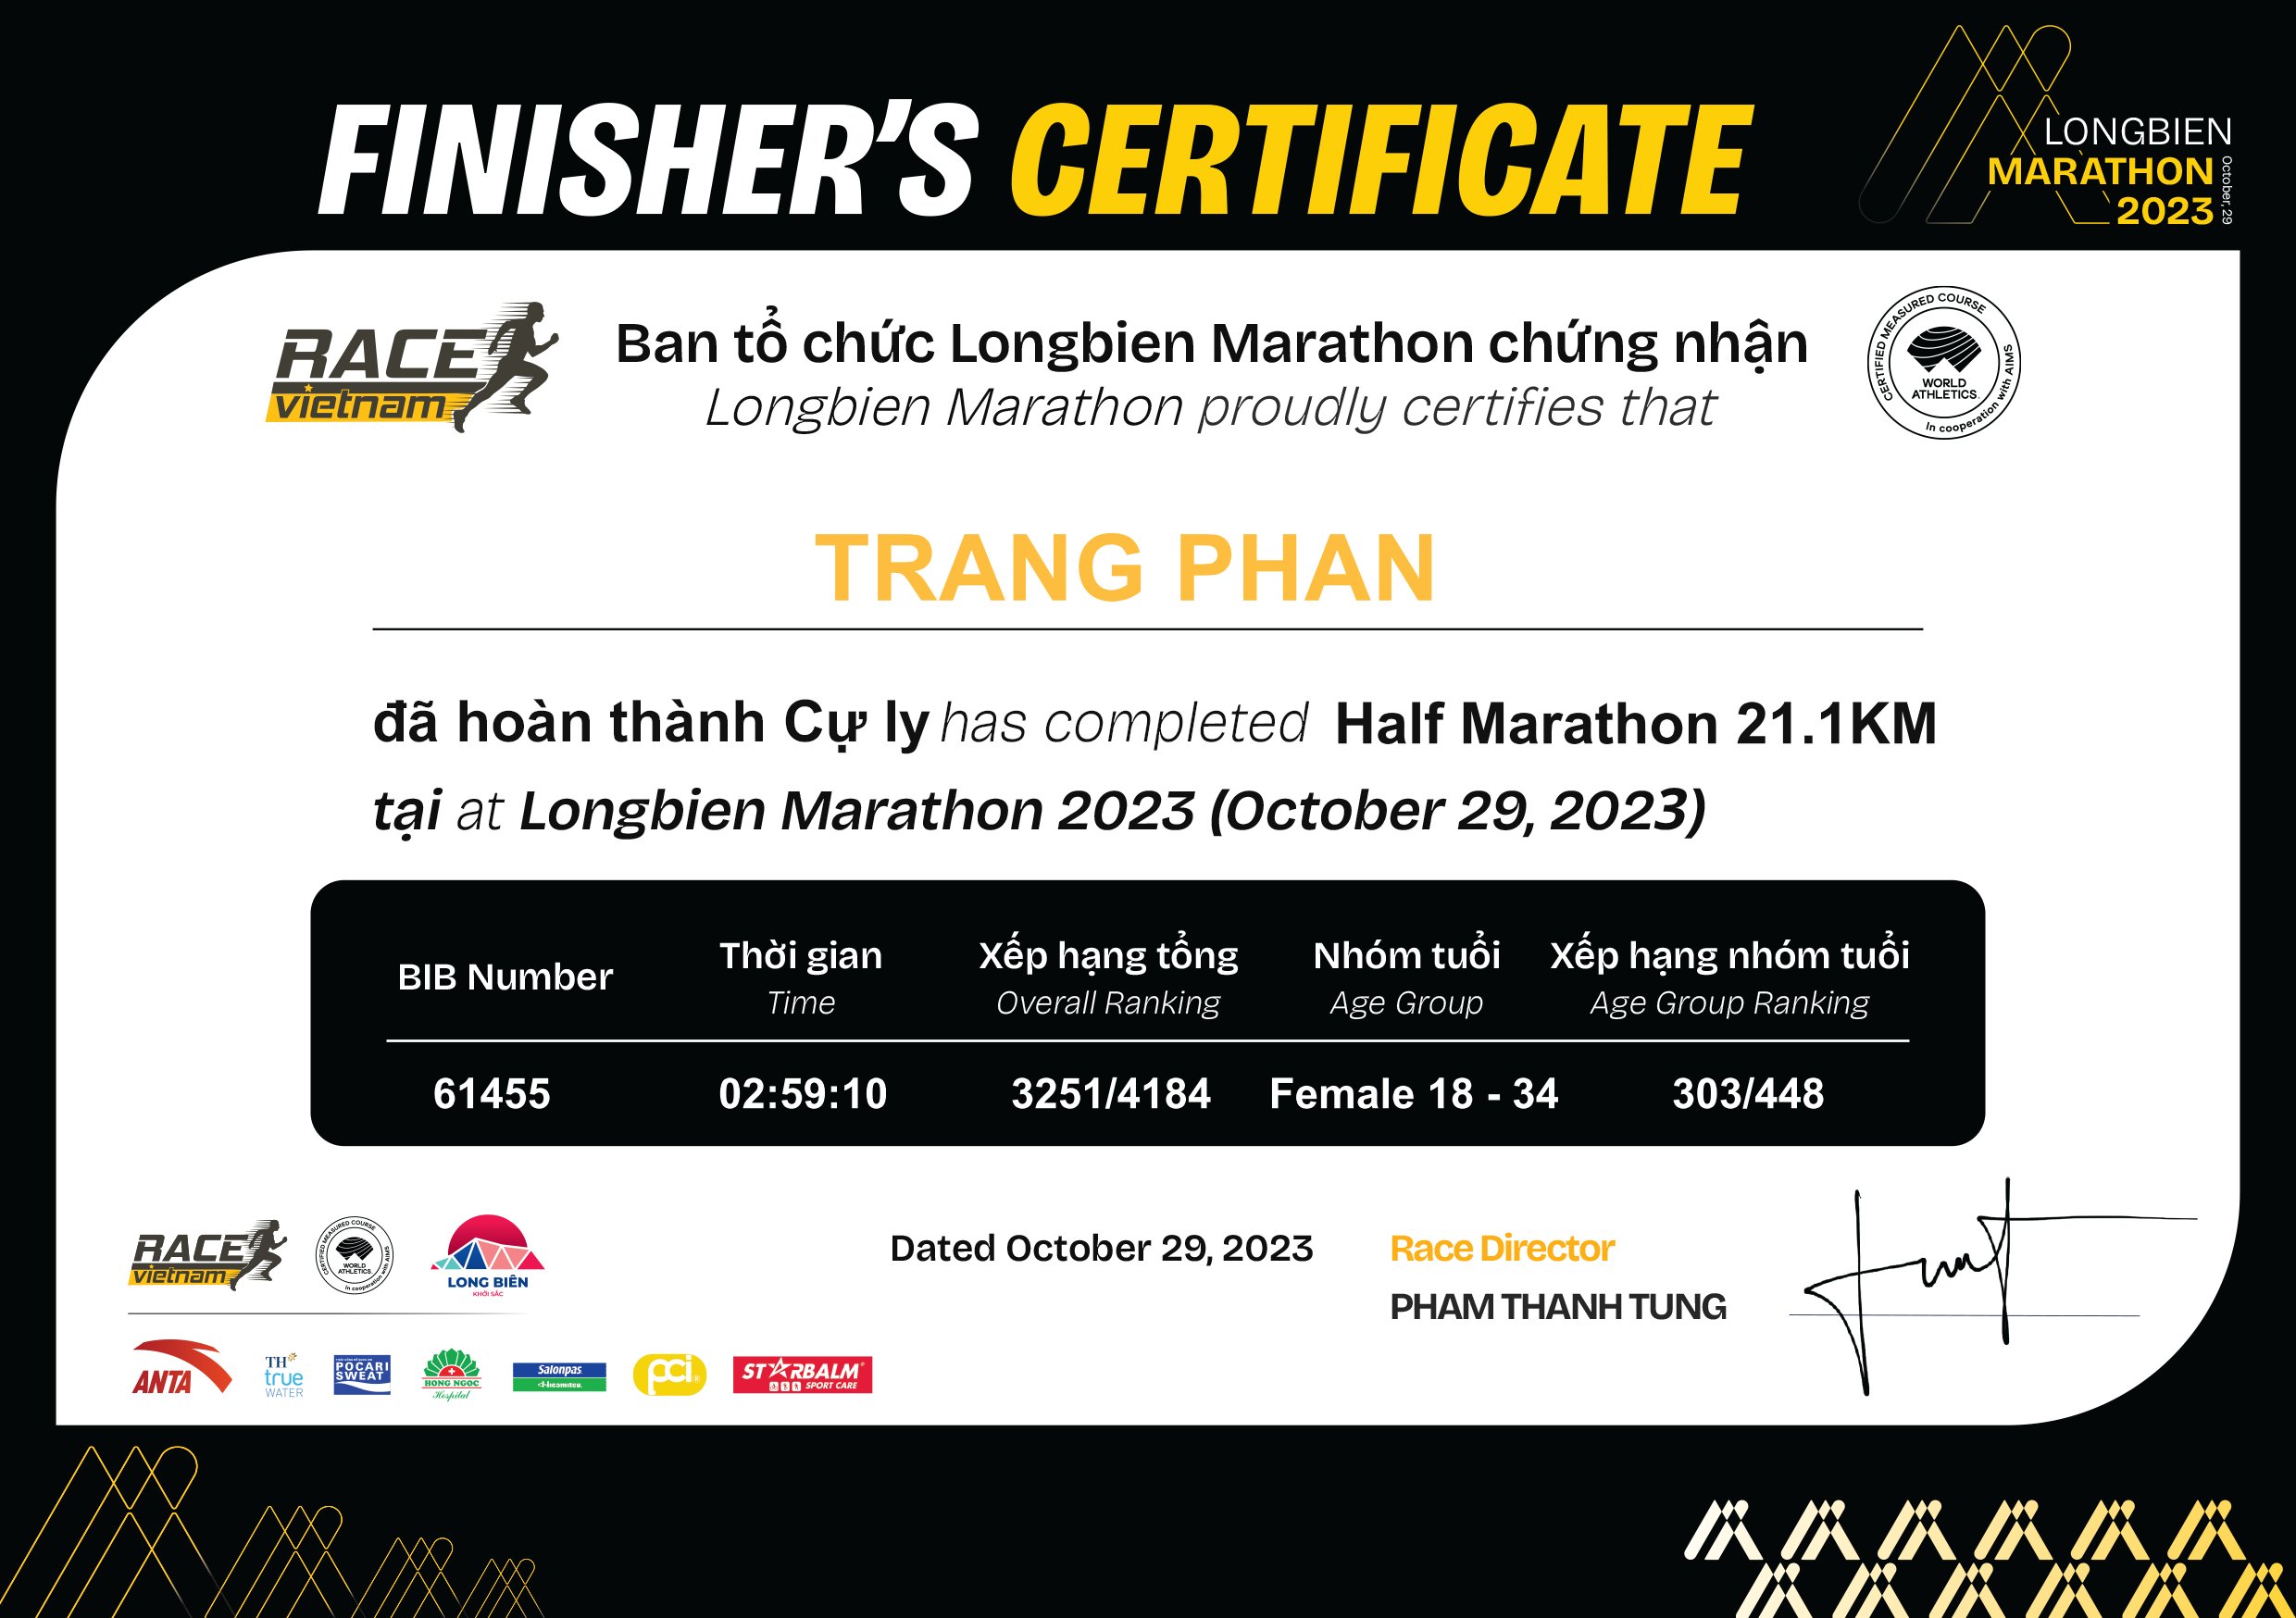 61455 - Trang Phan